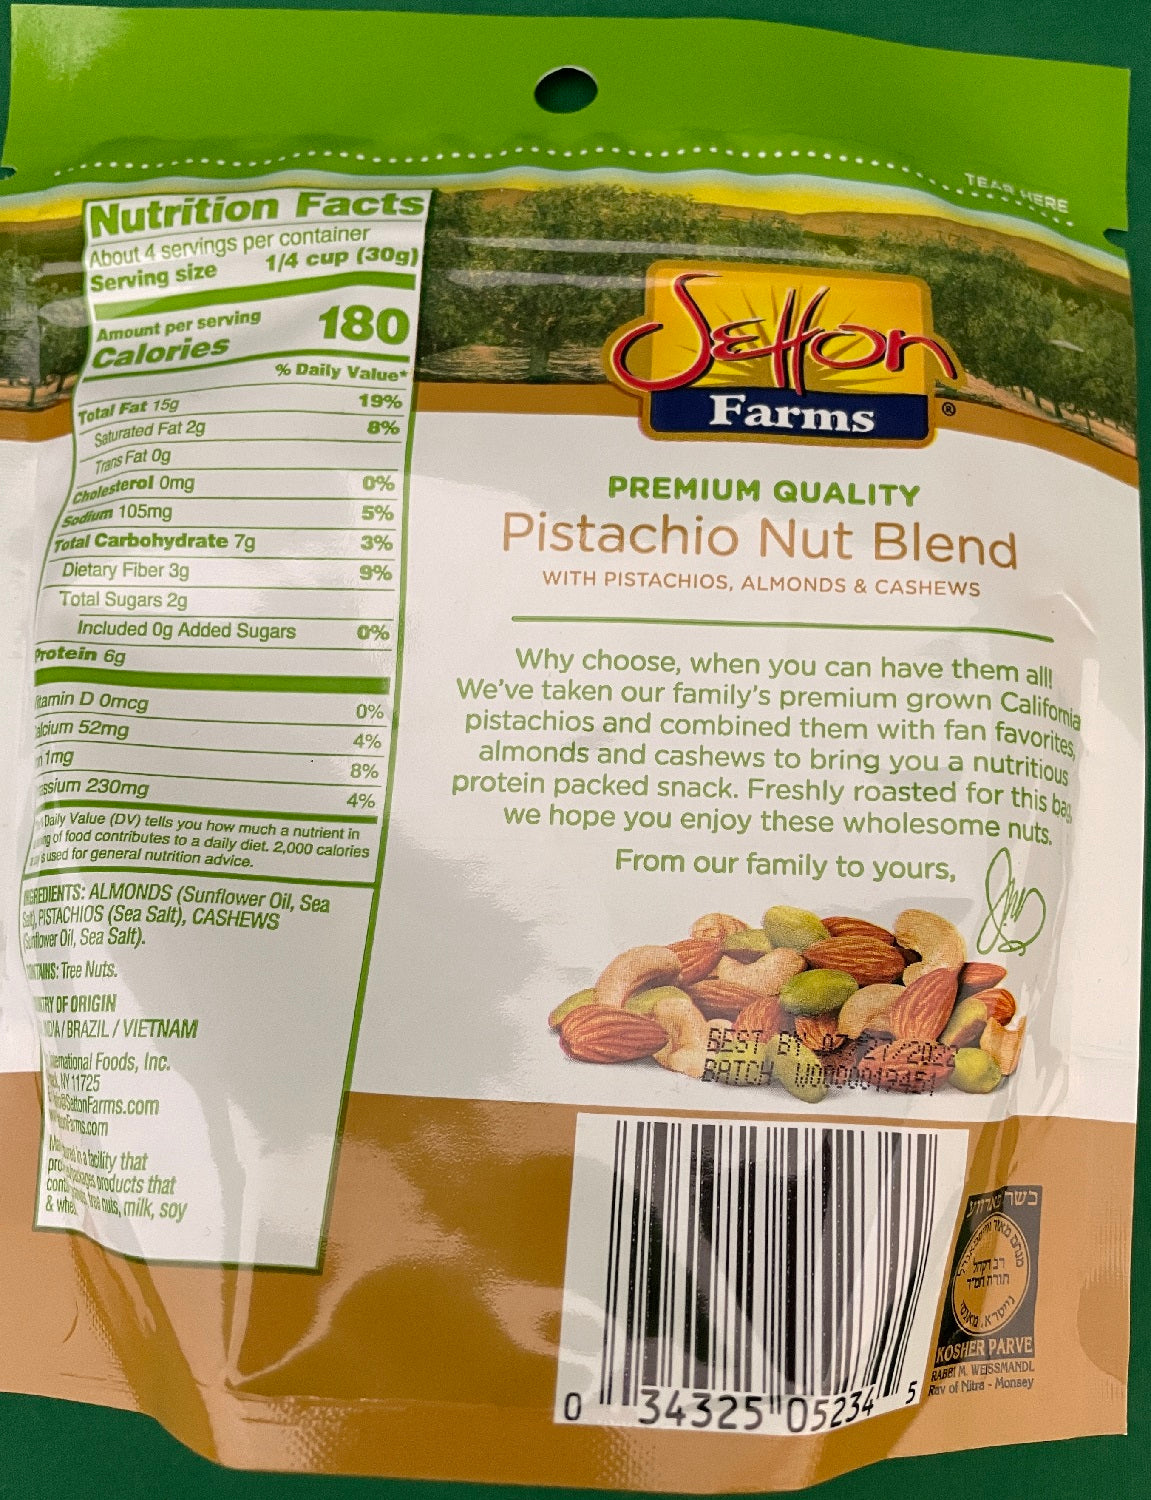 Setton Farms Pistachios Nut Blend 5 oz